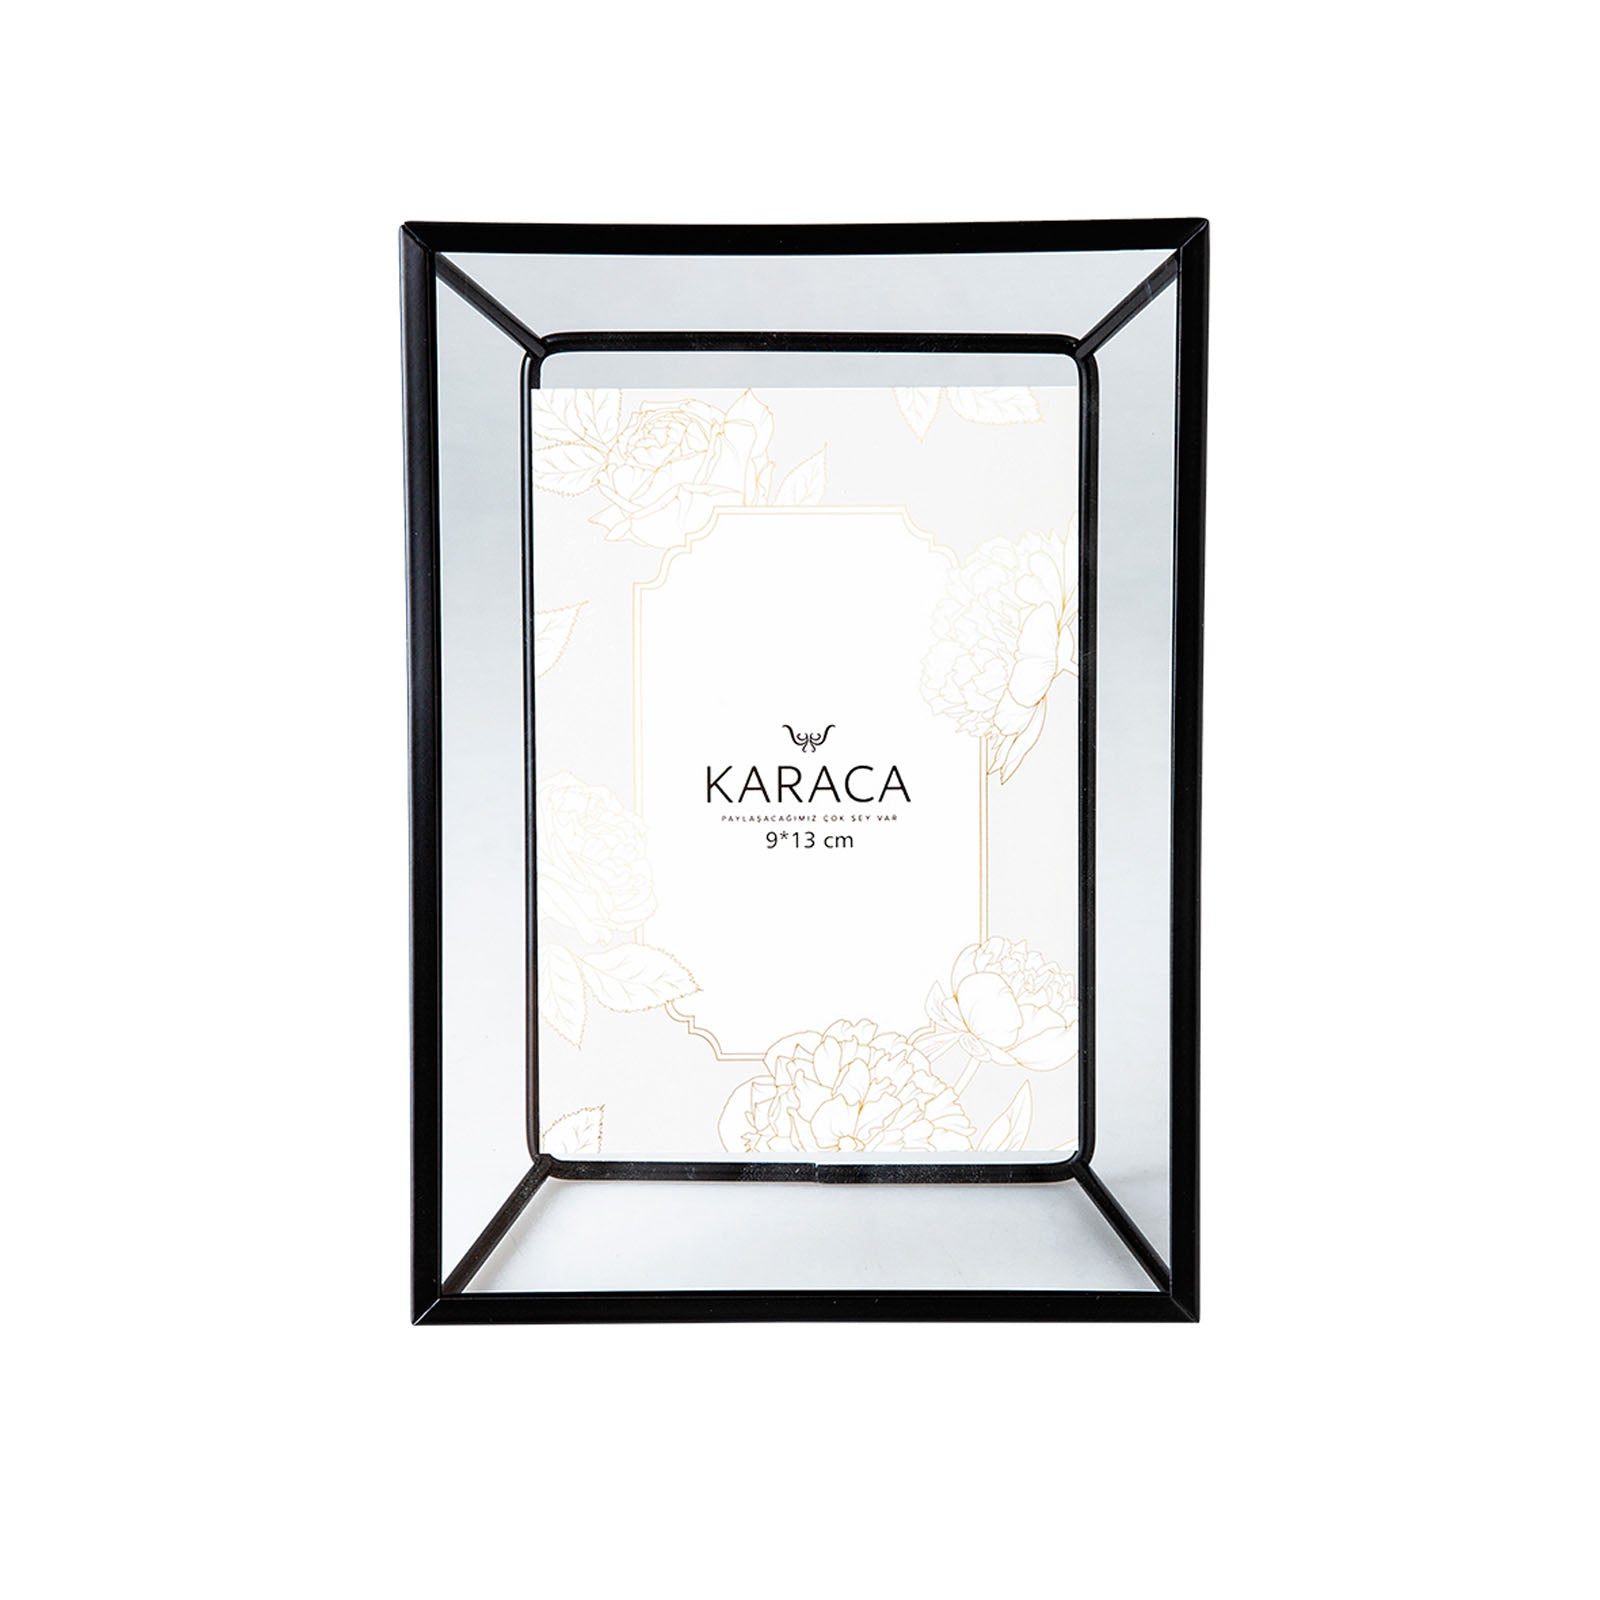 Karaca Magic Frame 12X17 Cm   153.20.01.0117